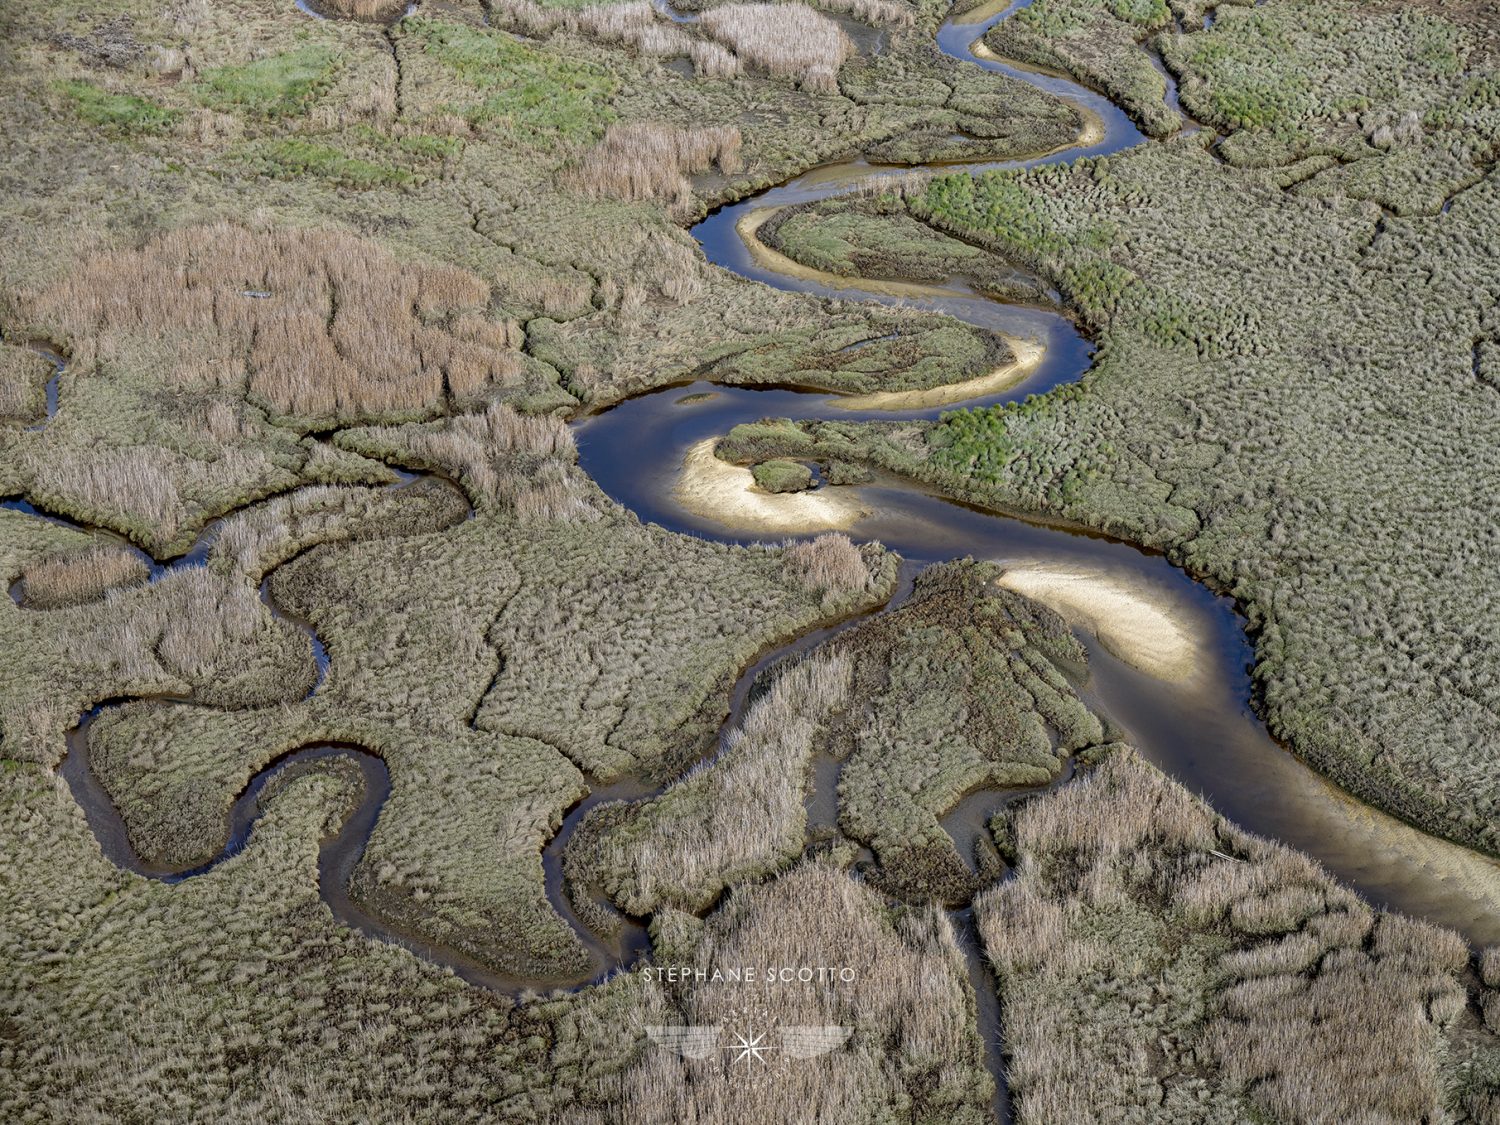 Photographie aérienne du Bassin d'Arcachon par l'artiste photographe Stéphane Scotto